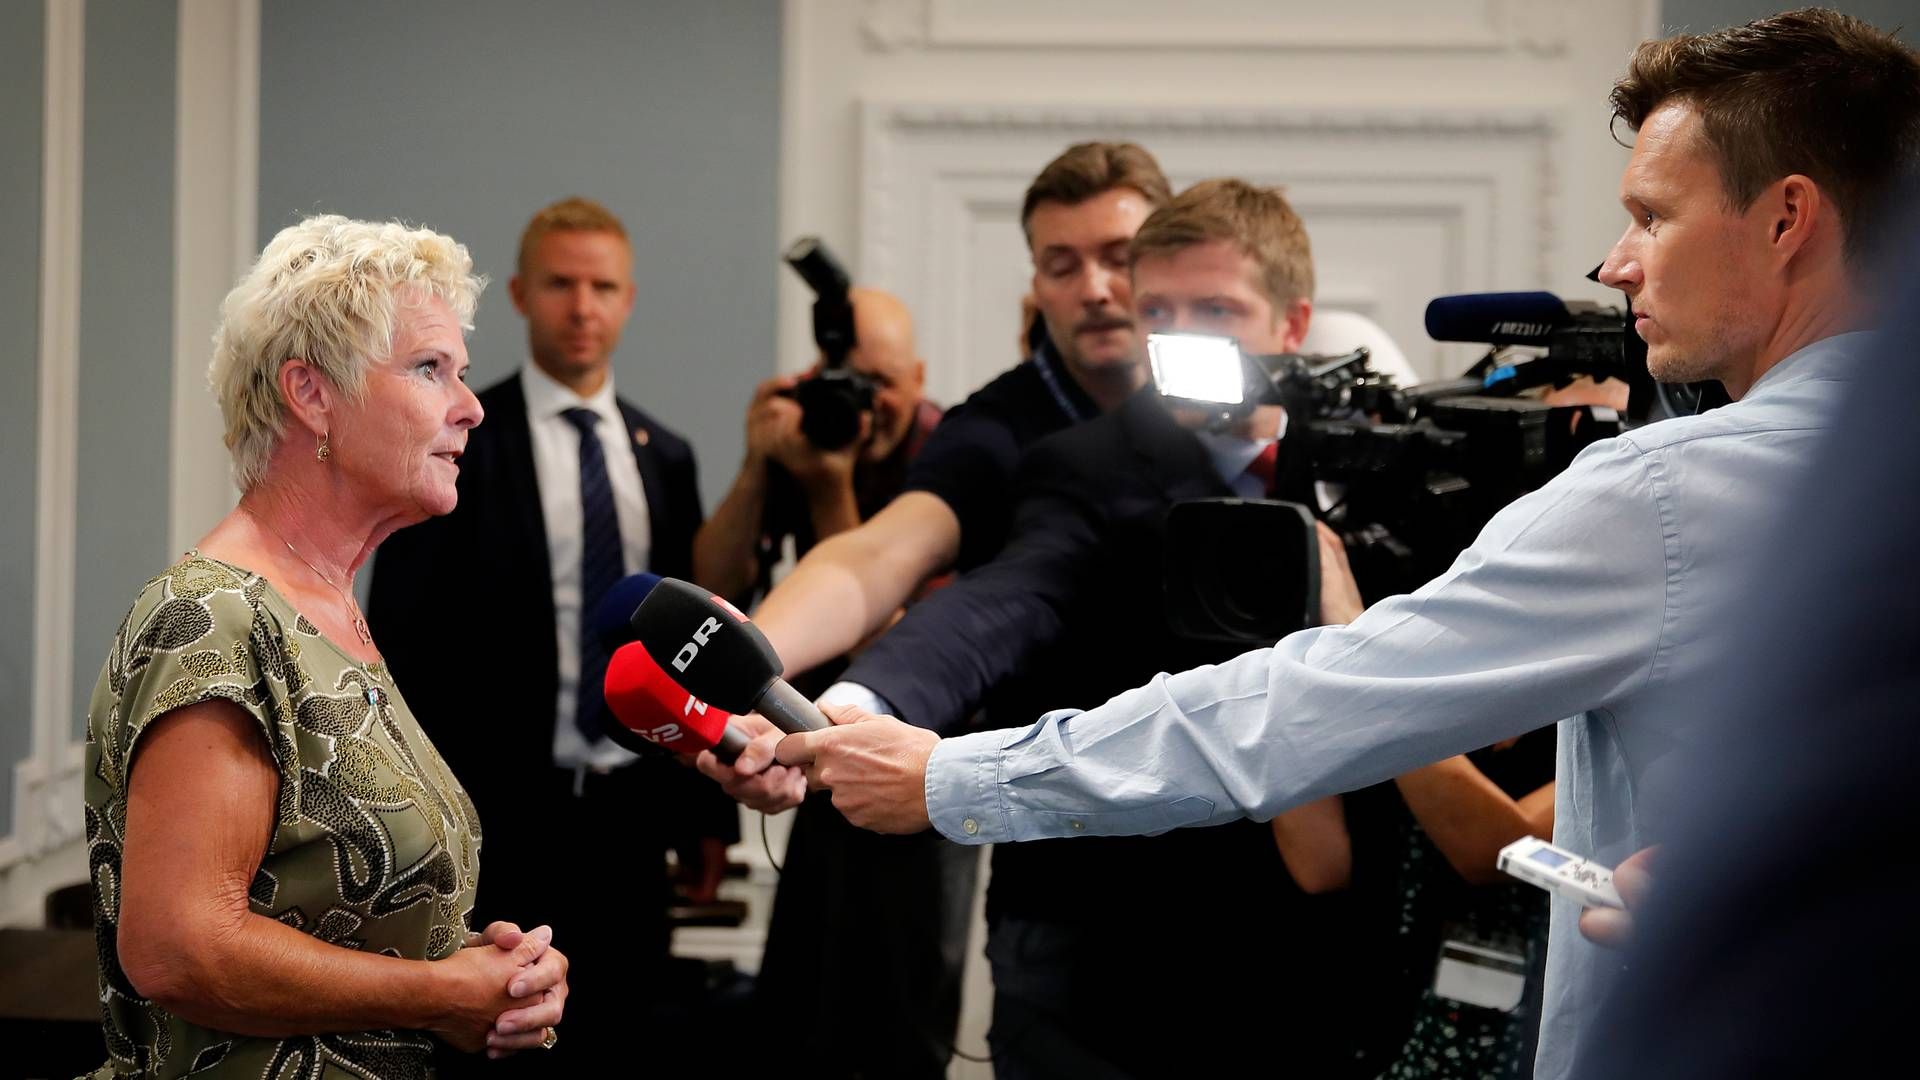 FH's formand, Lizette Risgaard, har ikke en selvstændig presse- og kommunikationsafdeling i ryggen i fremtiden. | Foto: Jens Dresling/Ritzau Scanpix